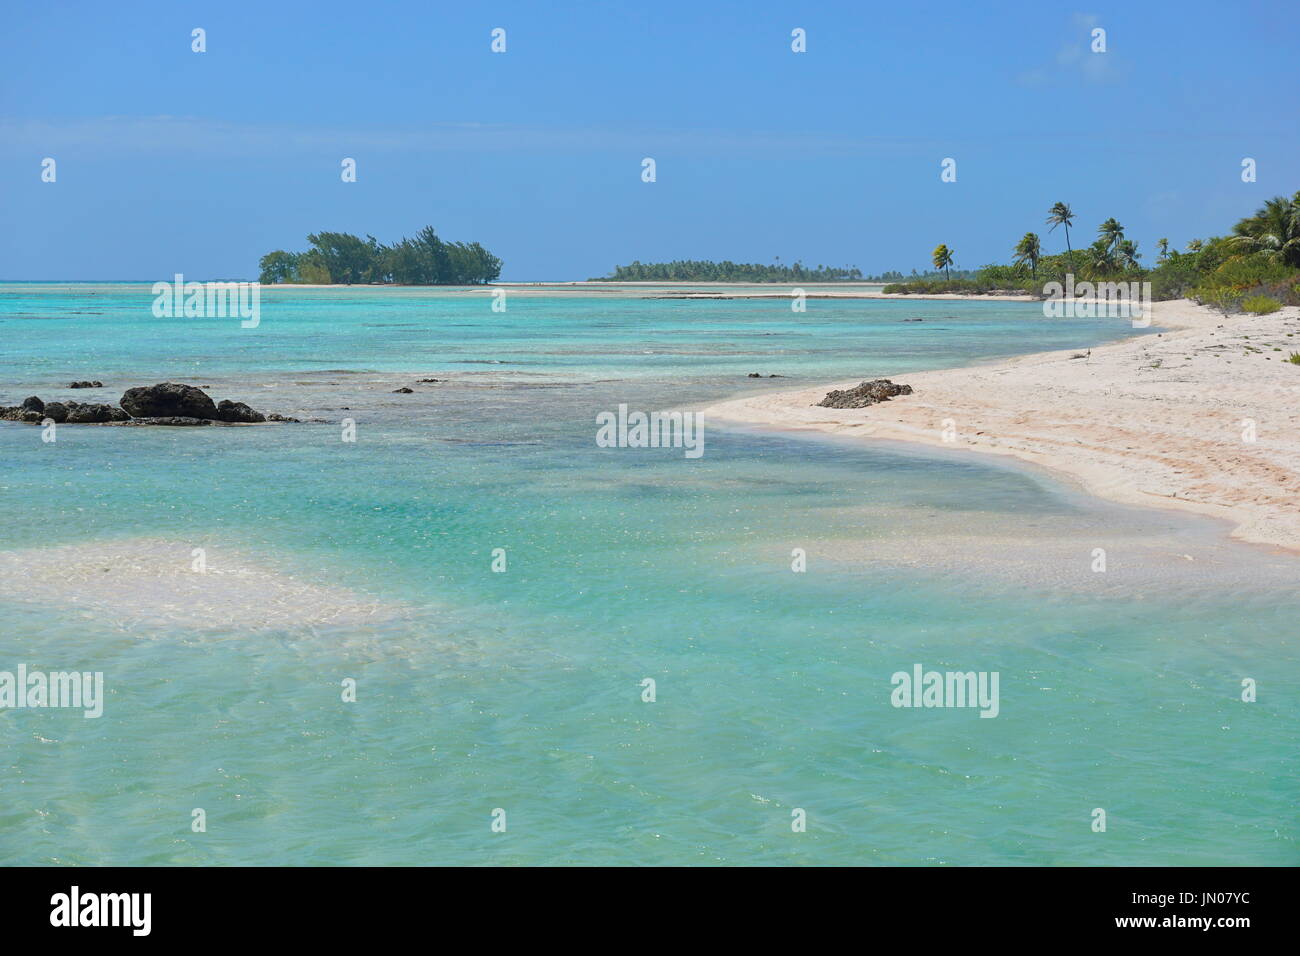 La laguna interna e il mare dell'atollo di Tikehau, Tuamotus arcipelago, Polinesia francese, oceano pacifico del sud Foto Stock